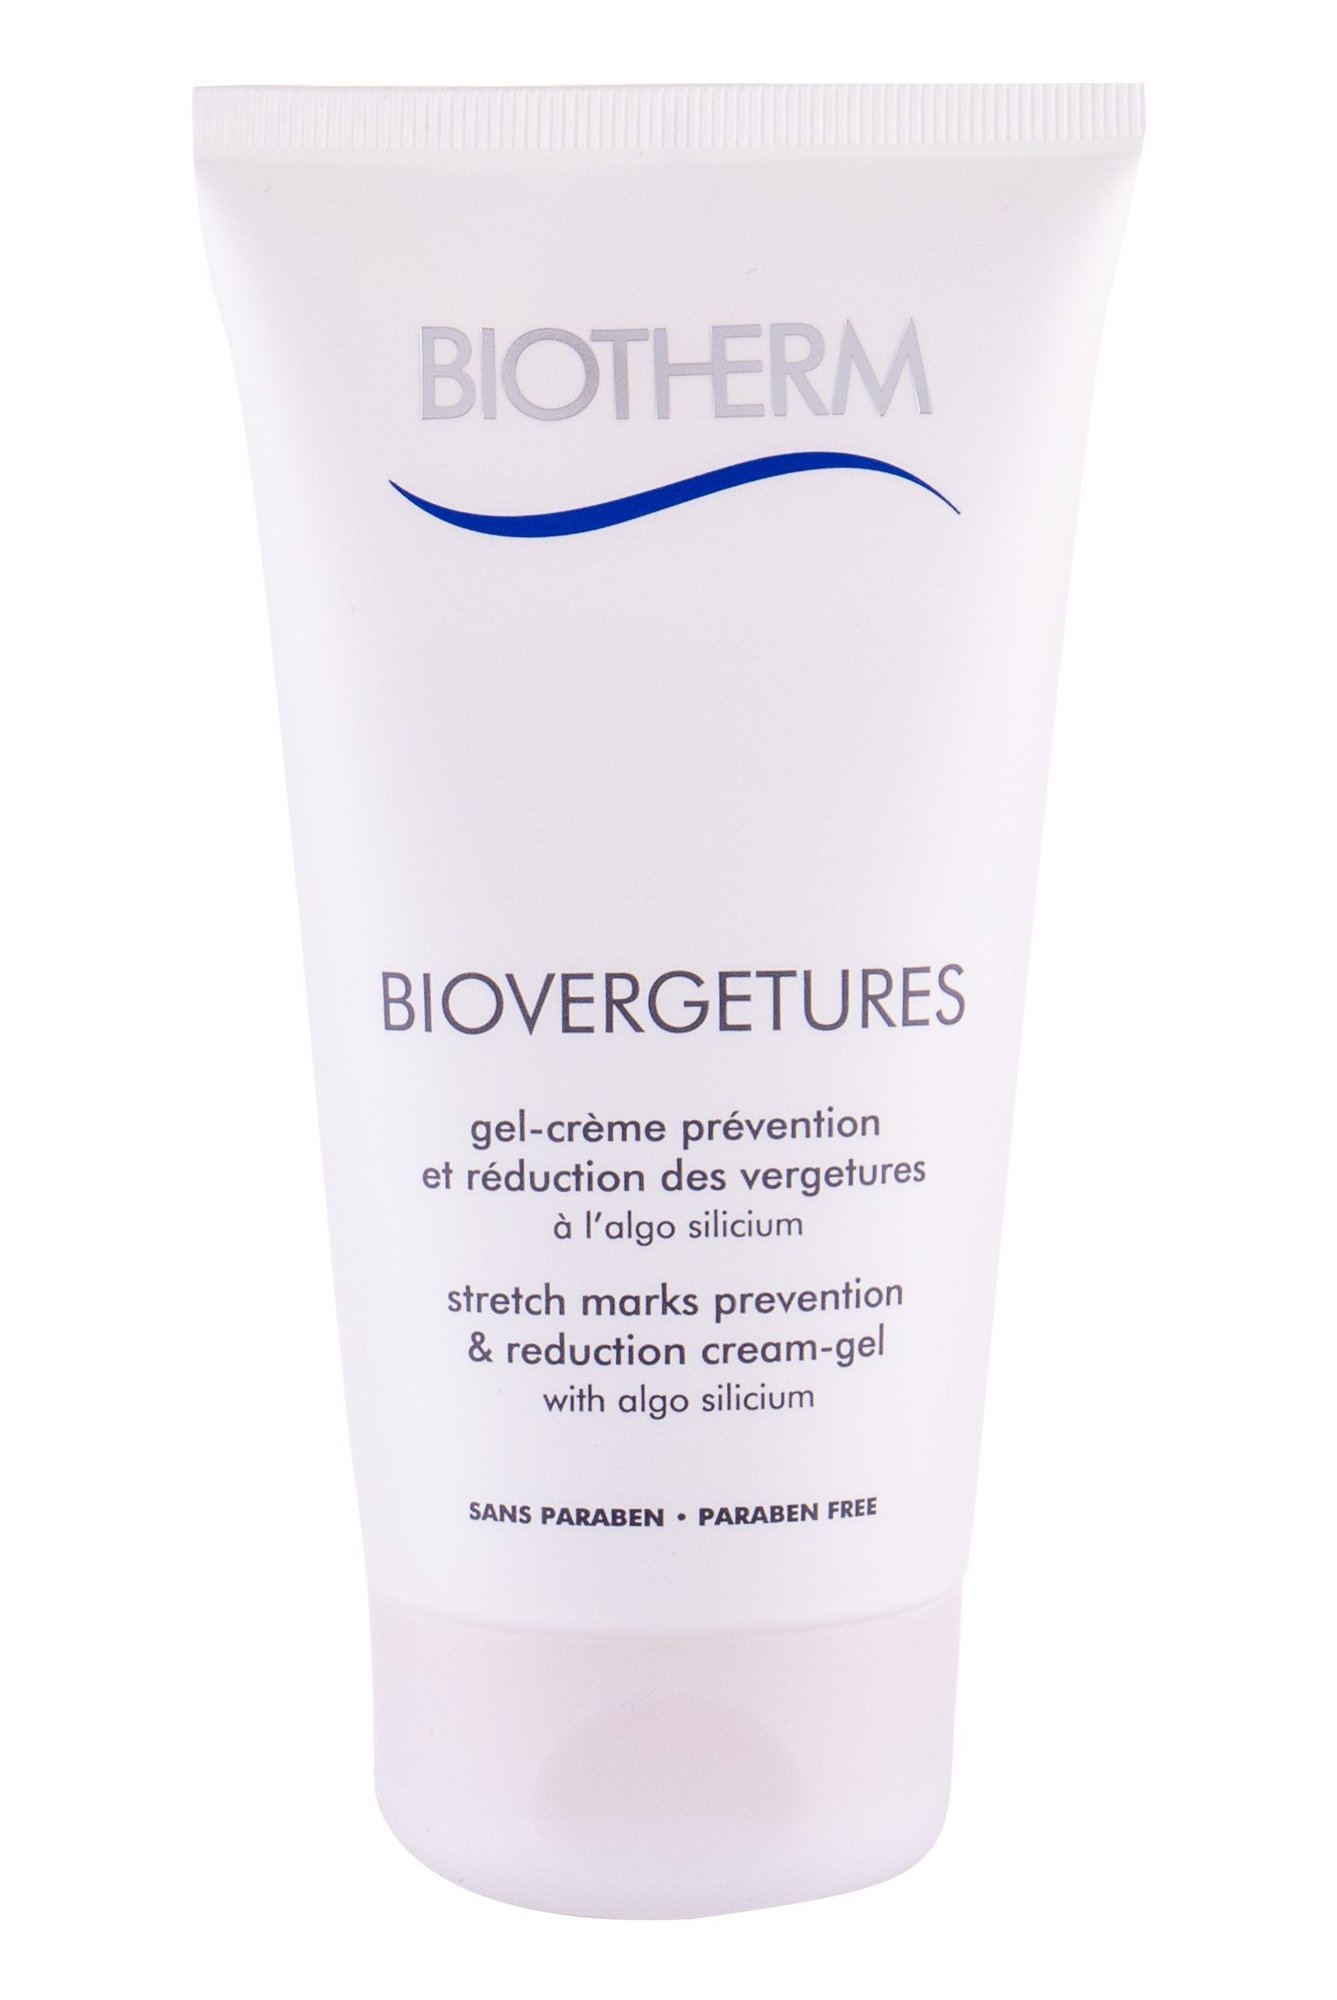 Biotherm Biovergetures  Stretch Marks Reduction Cream Gel priemonė celiulitui ir strijoms